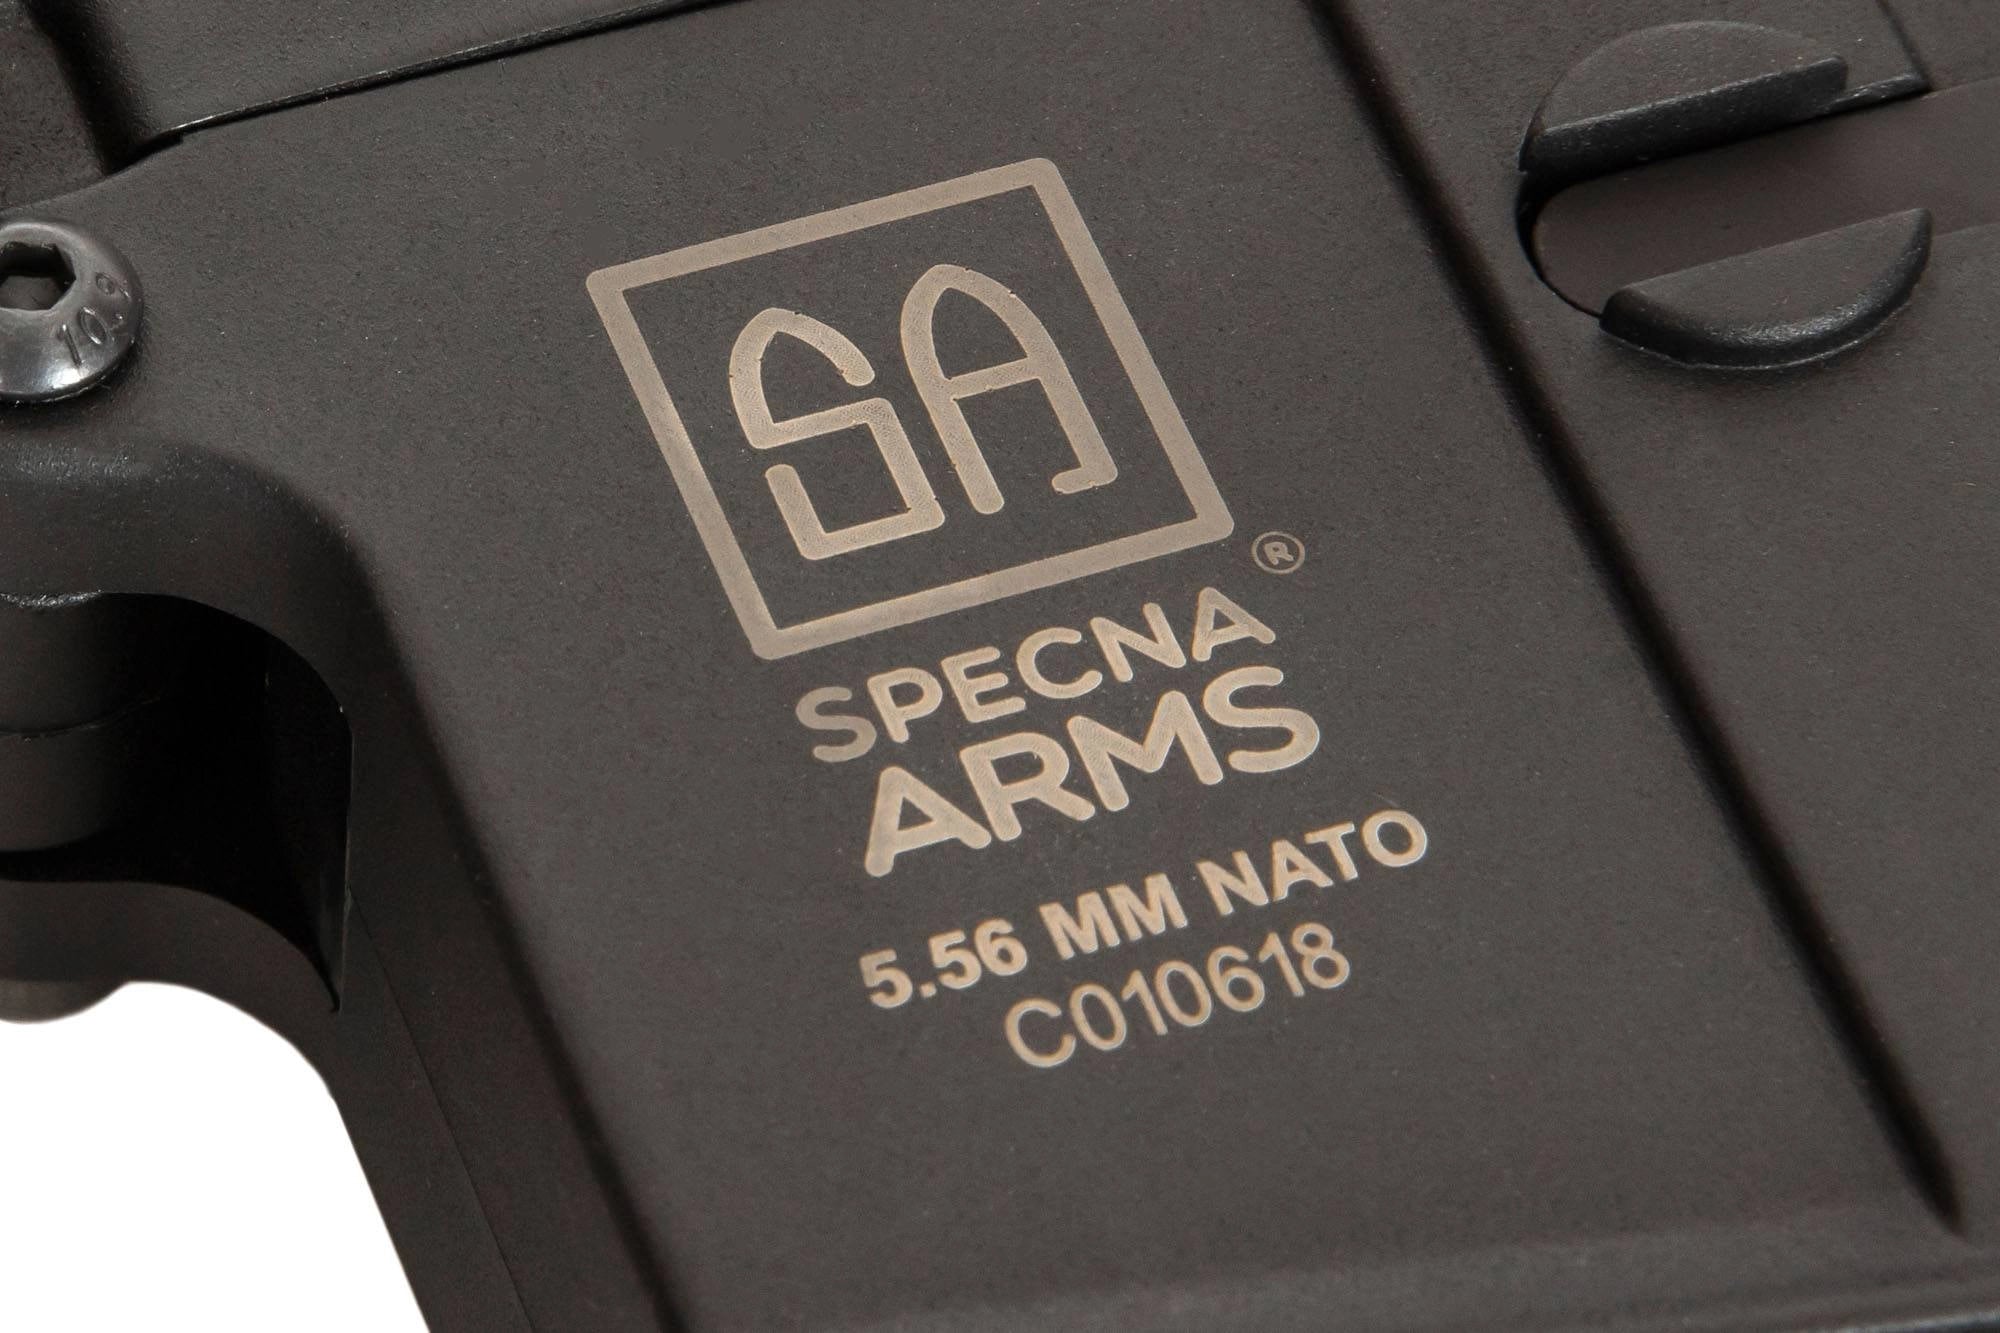 Specna Arms SA-C25 PDW Core M4 AEG Rifle - ssairsoft.com